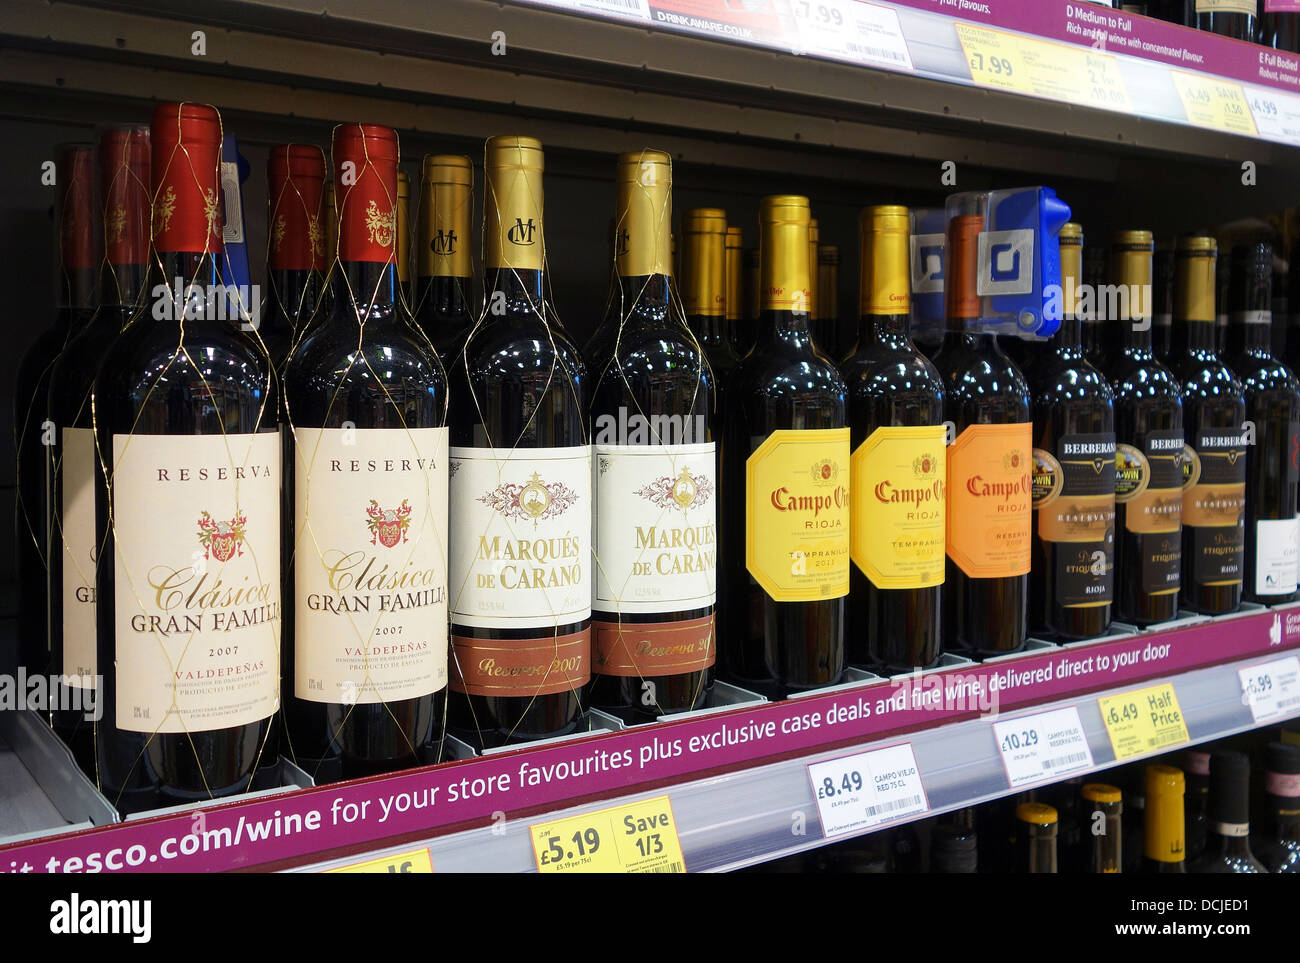 Bouteilles de vin espagnol dans un supermarché Tesco Banque D'Images